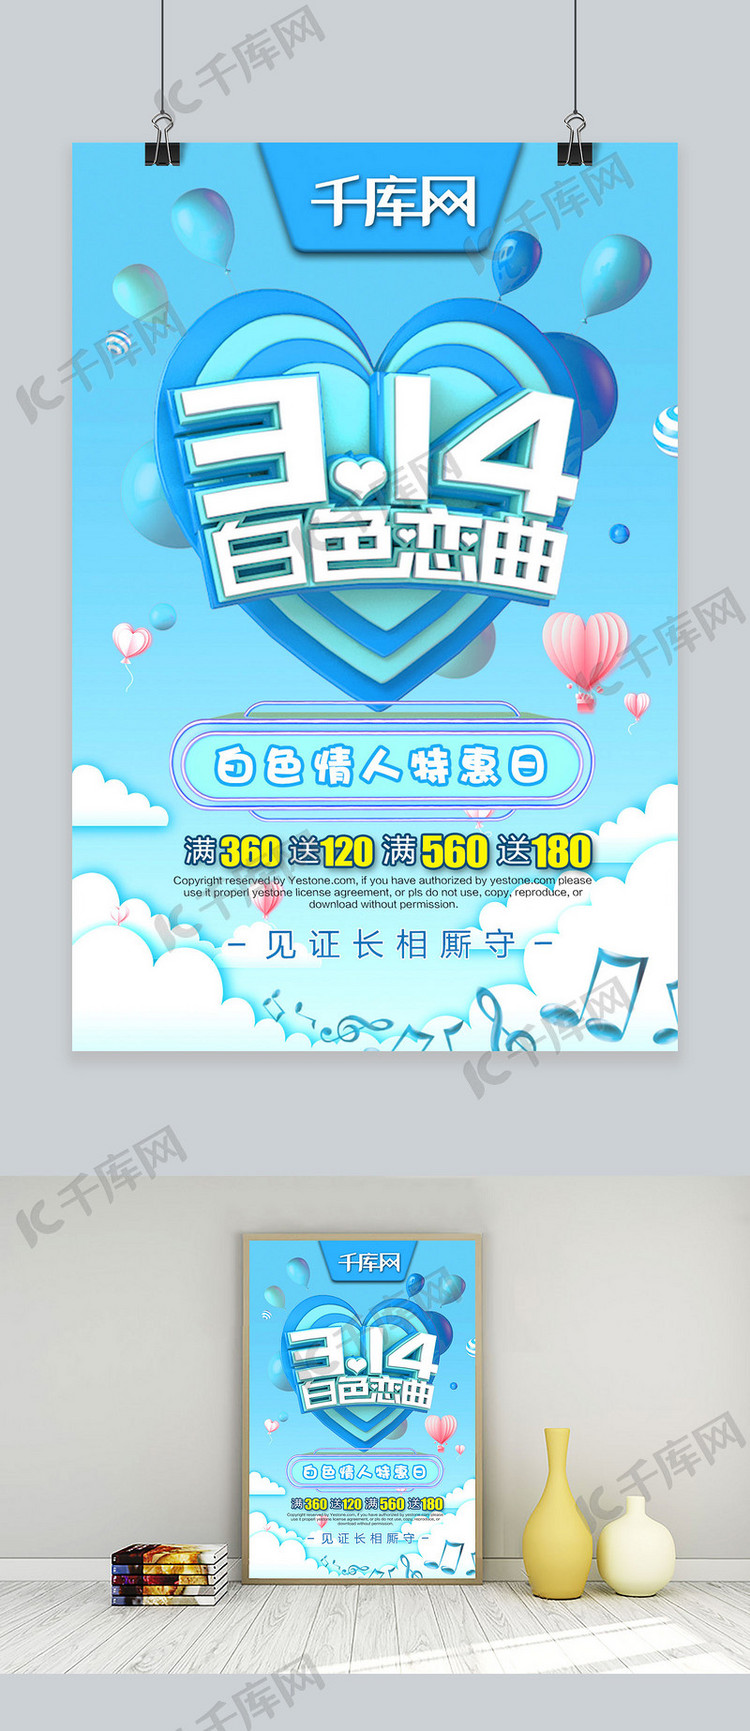 314白色恋曲C4D蓝色天空节日促销折扣海报